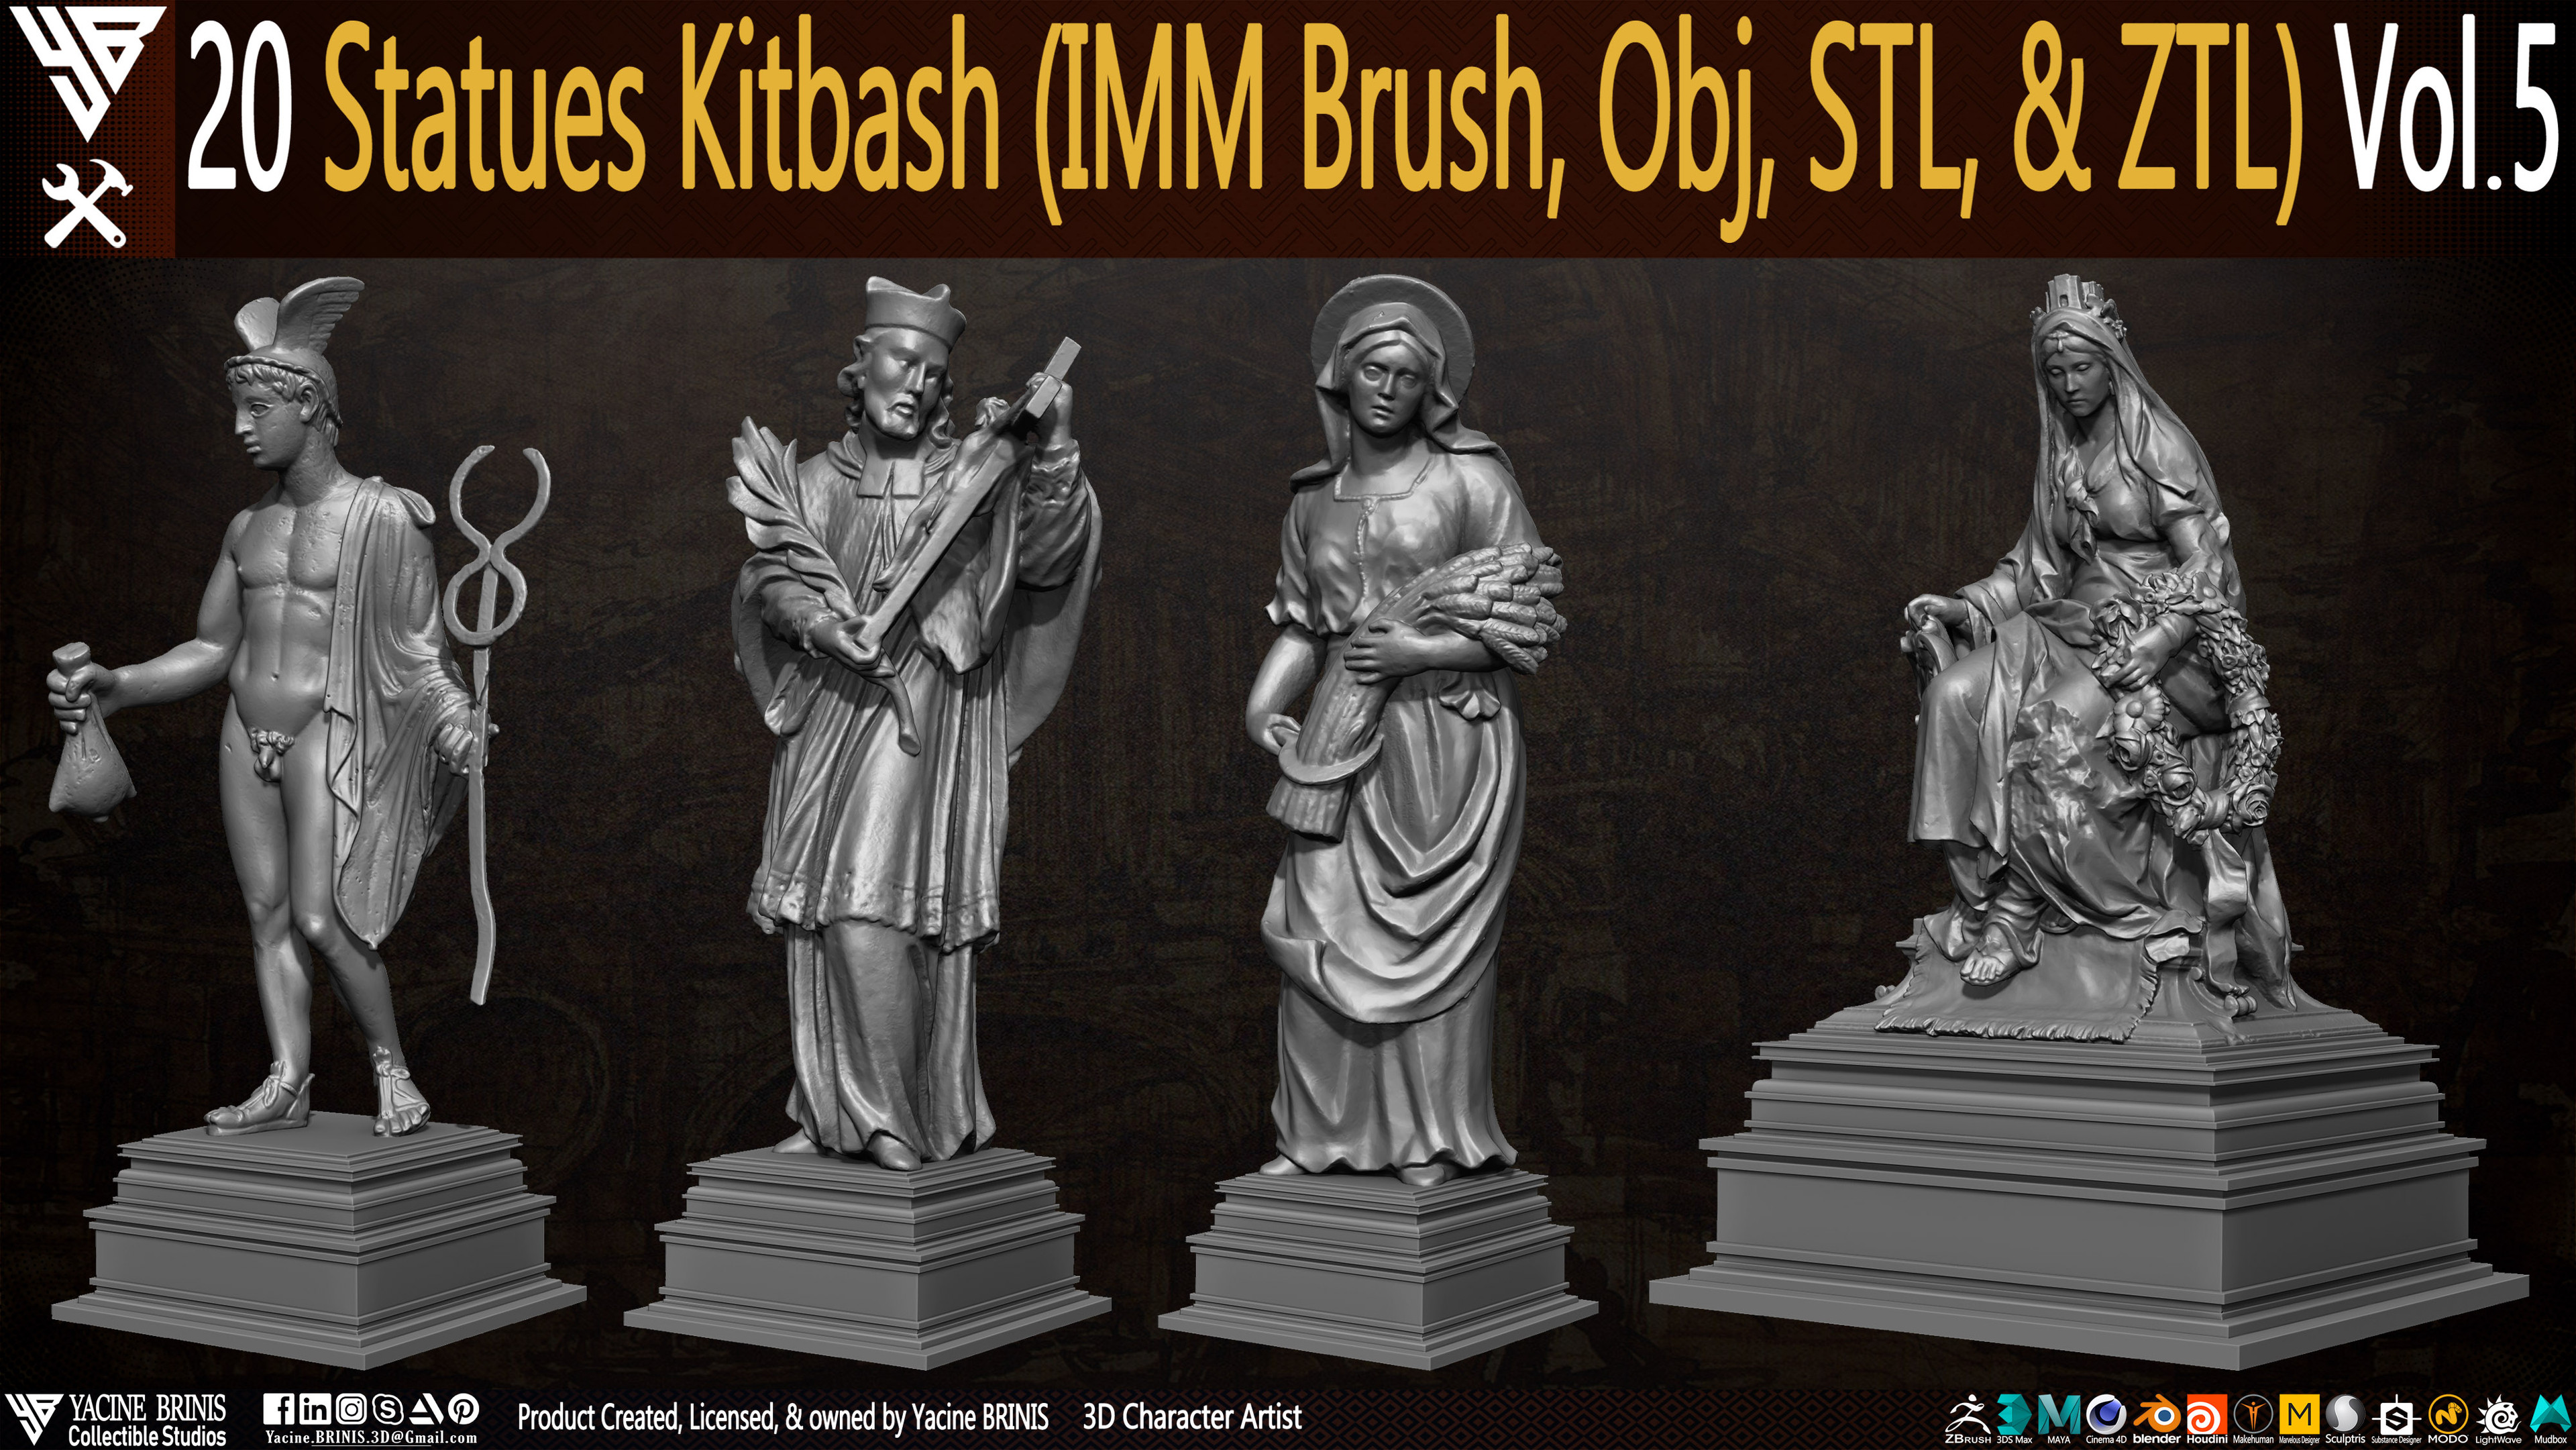 Statues Kitbash by yacine brinis Set 27